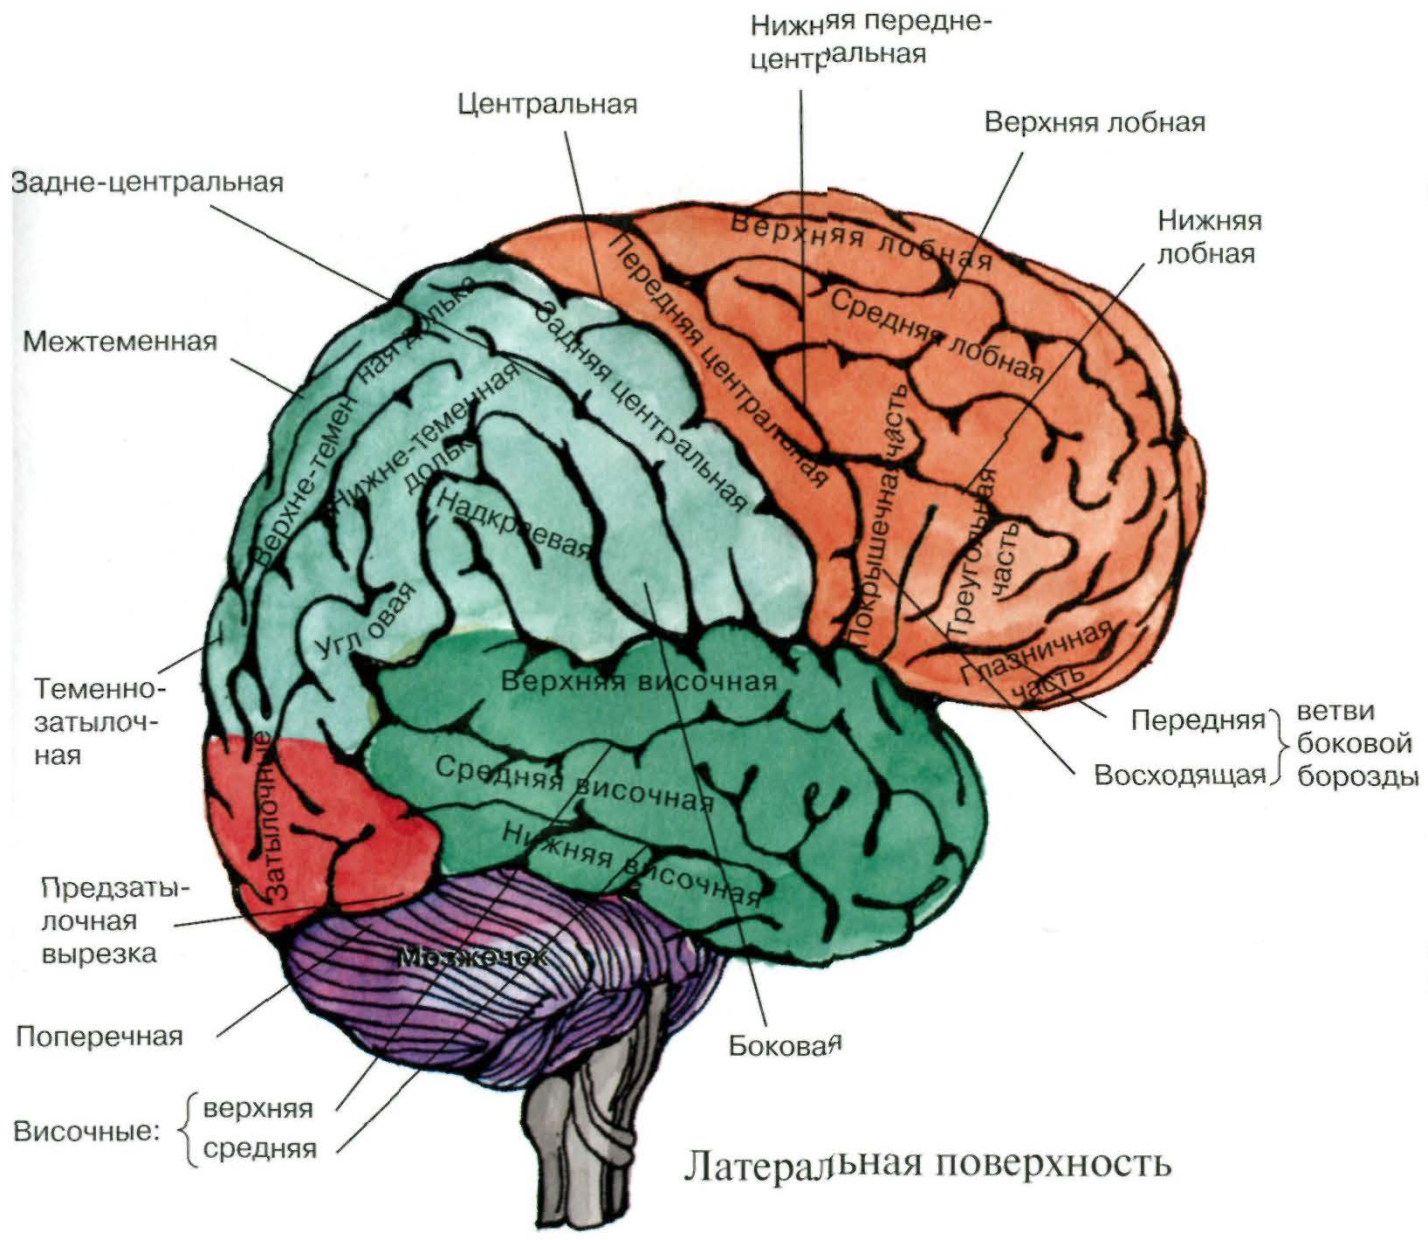 Конвекситальные борозды большого мозга. Теменно-затылочная область мозга. Конвекситальные отделы лобных долей мозга это. Древние отделы мозга человека